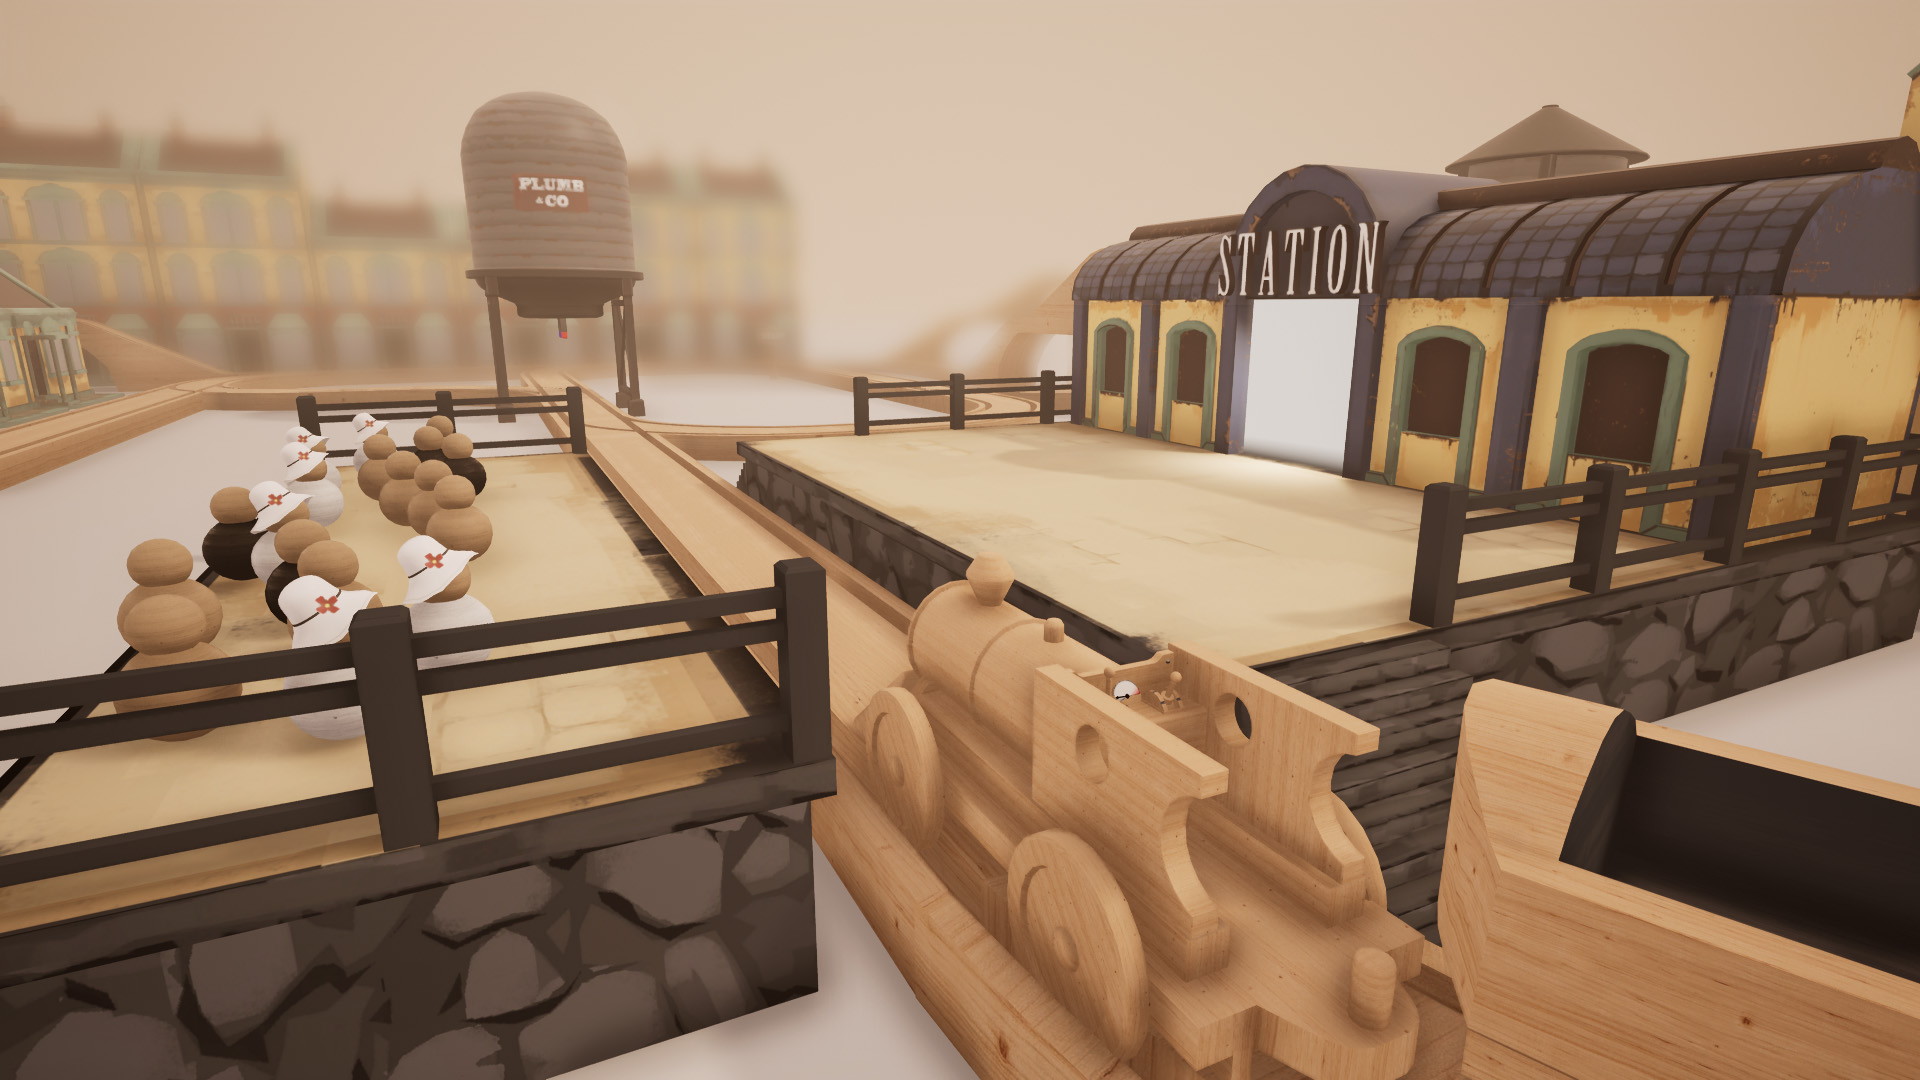 Tracks - The Train Set Game - screenshot 8